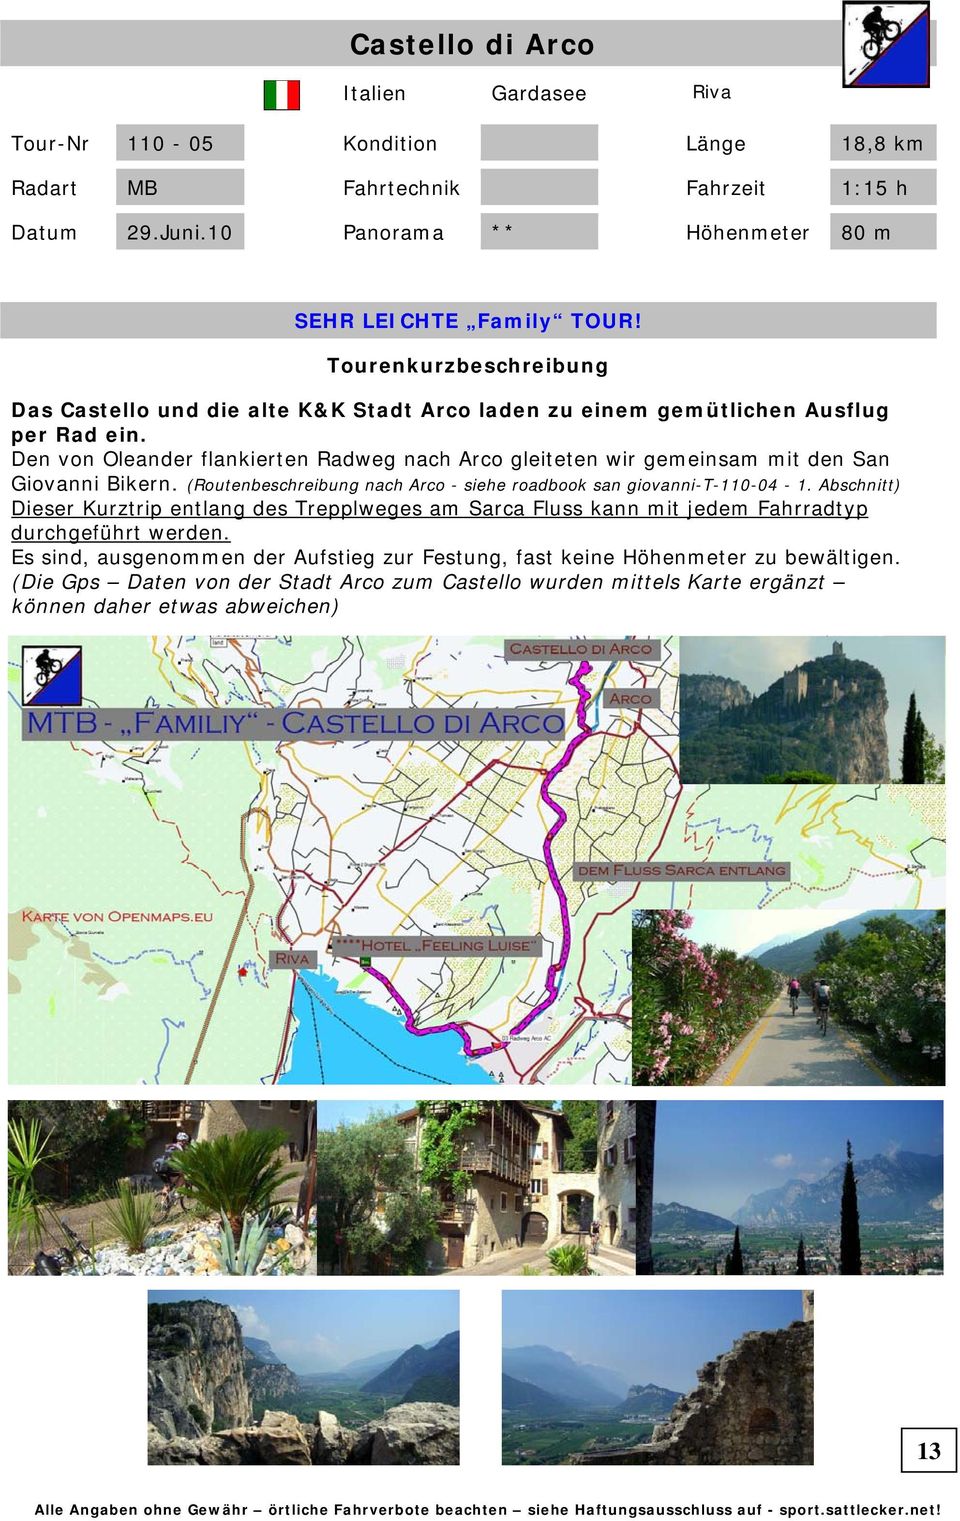 Den von Oleander flankierten Radweg nach Arco gleiteten wir gemeinsam mit den San Giovanni Bikern. (Routenbeschreibung nach Arco - siehe roadbook san giovanni-t-110-04 - 1.